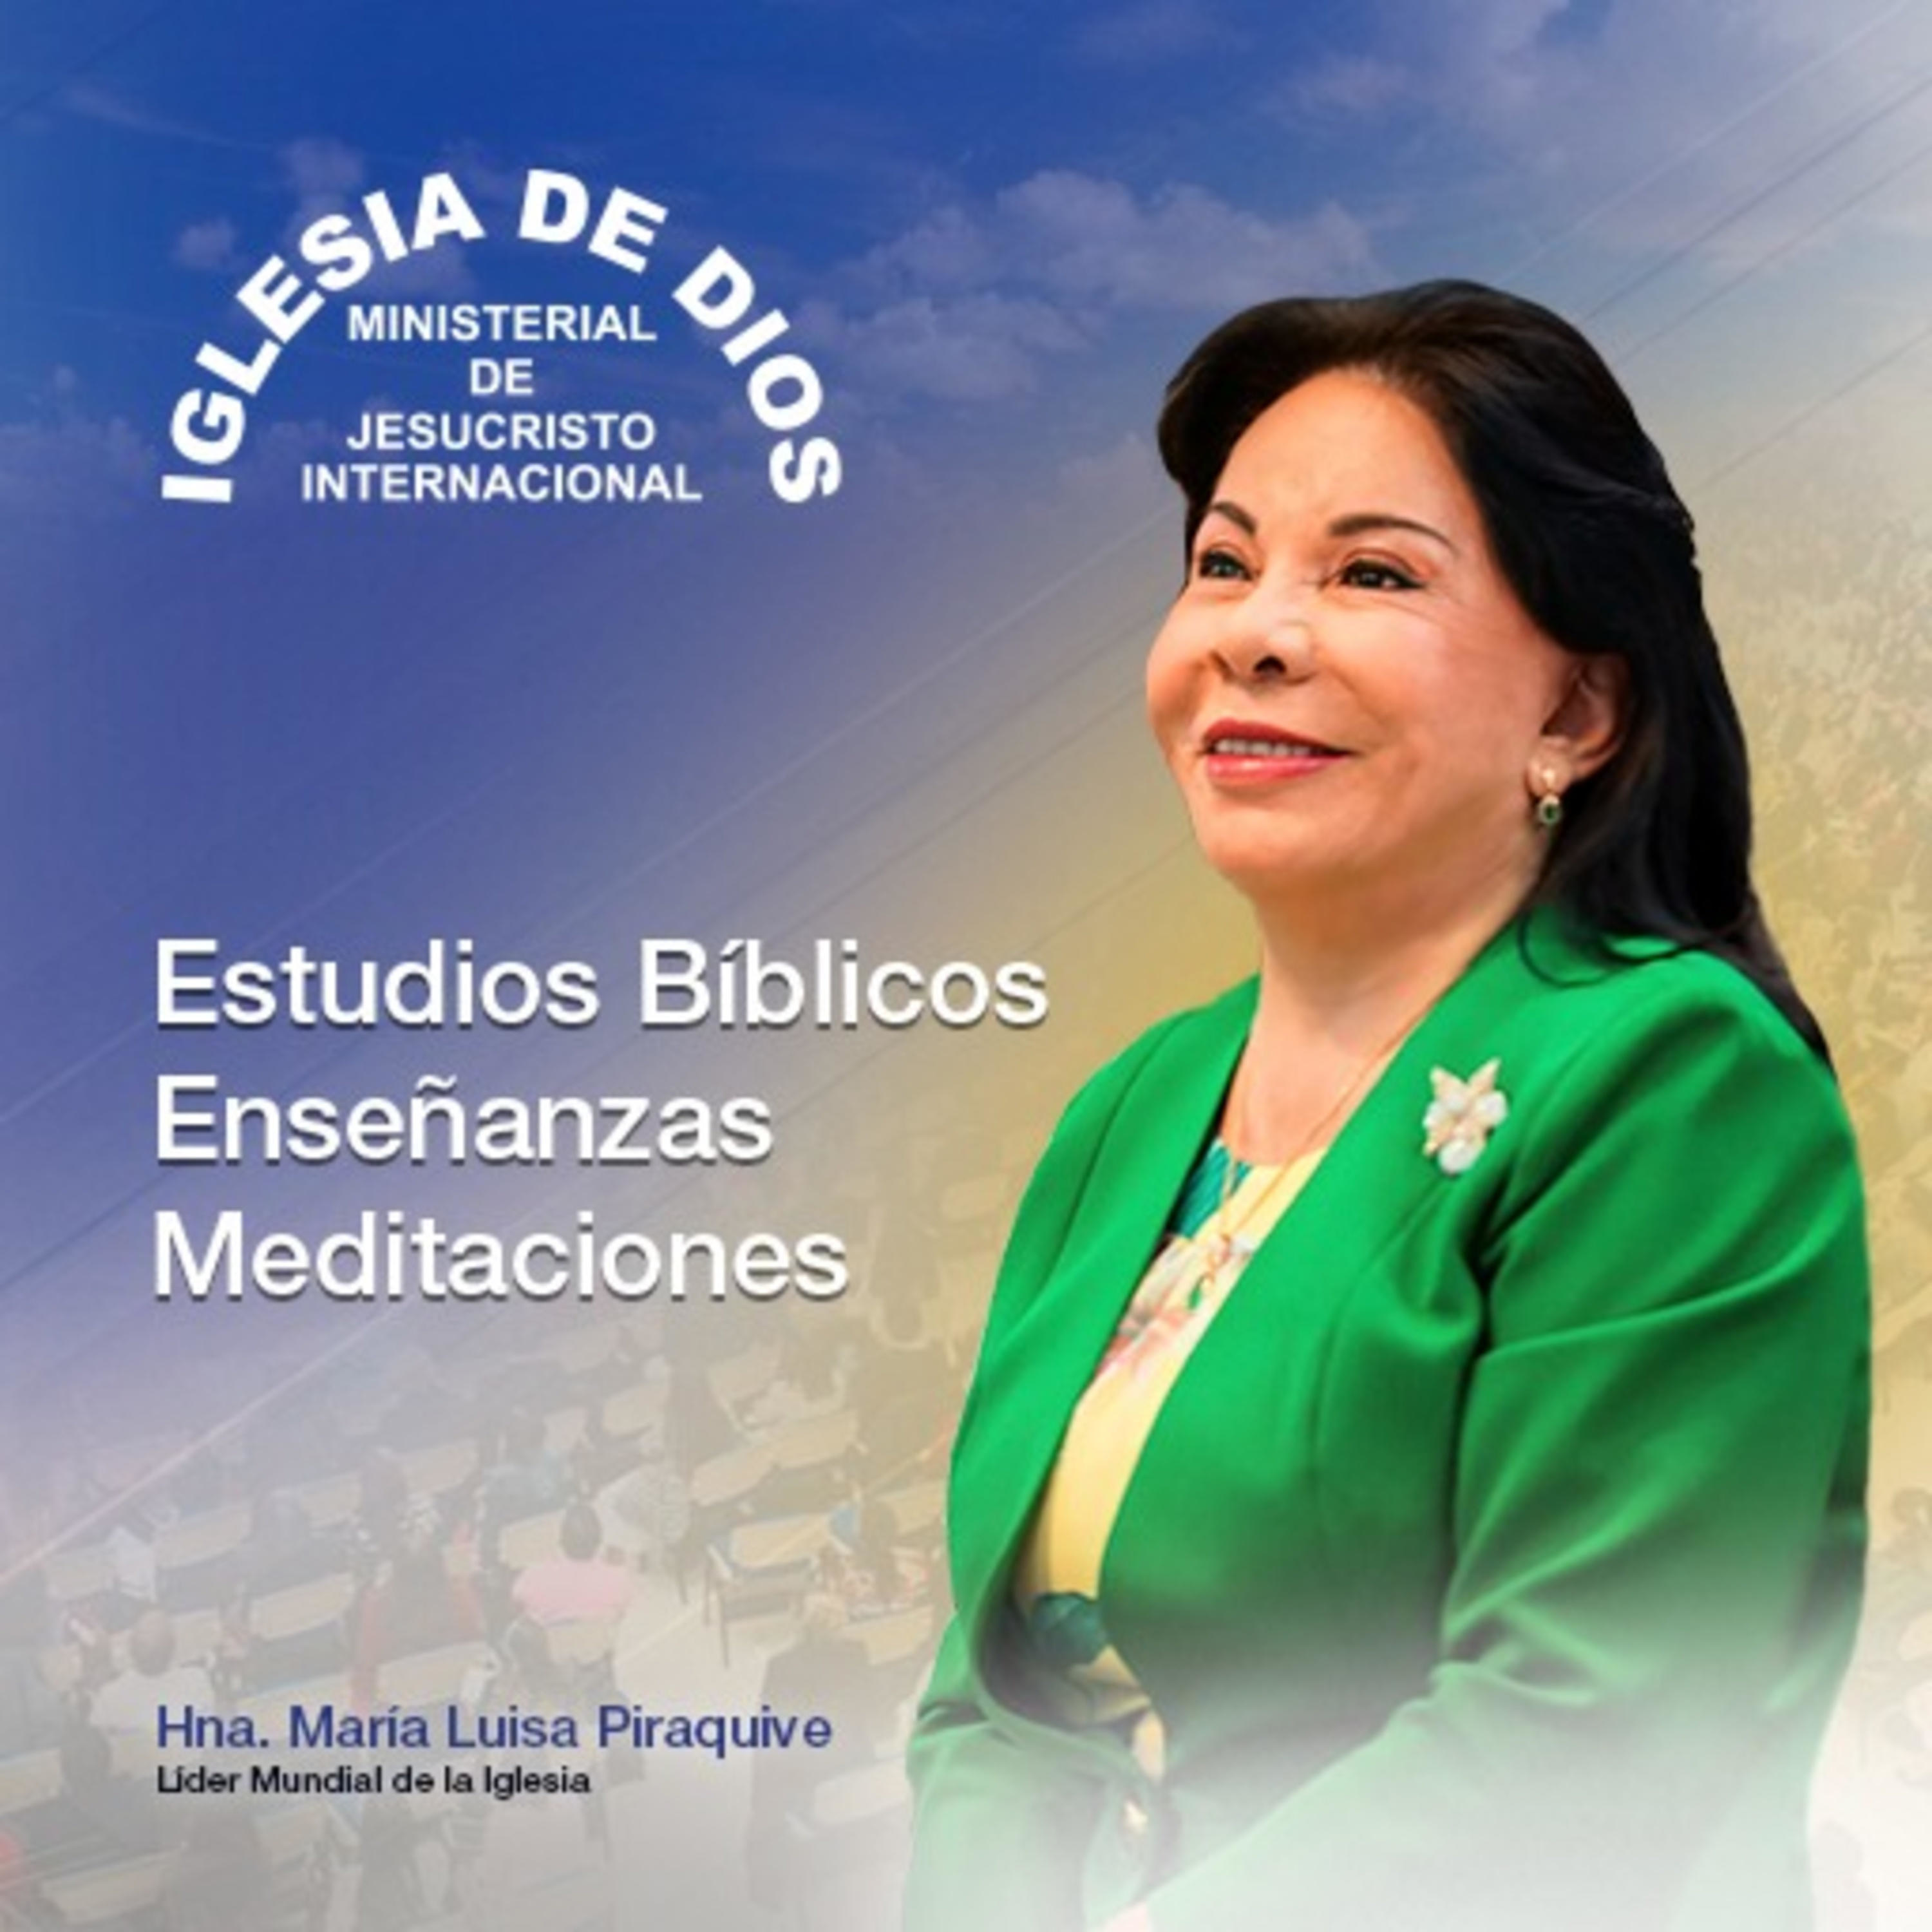 Estudios Bíblicos, Hna. María Luisa Piraquive, Iglesia de Dios Ministerial de Jesucristo Inter…